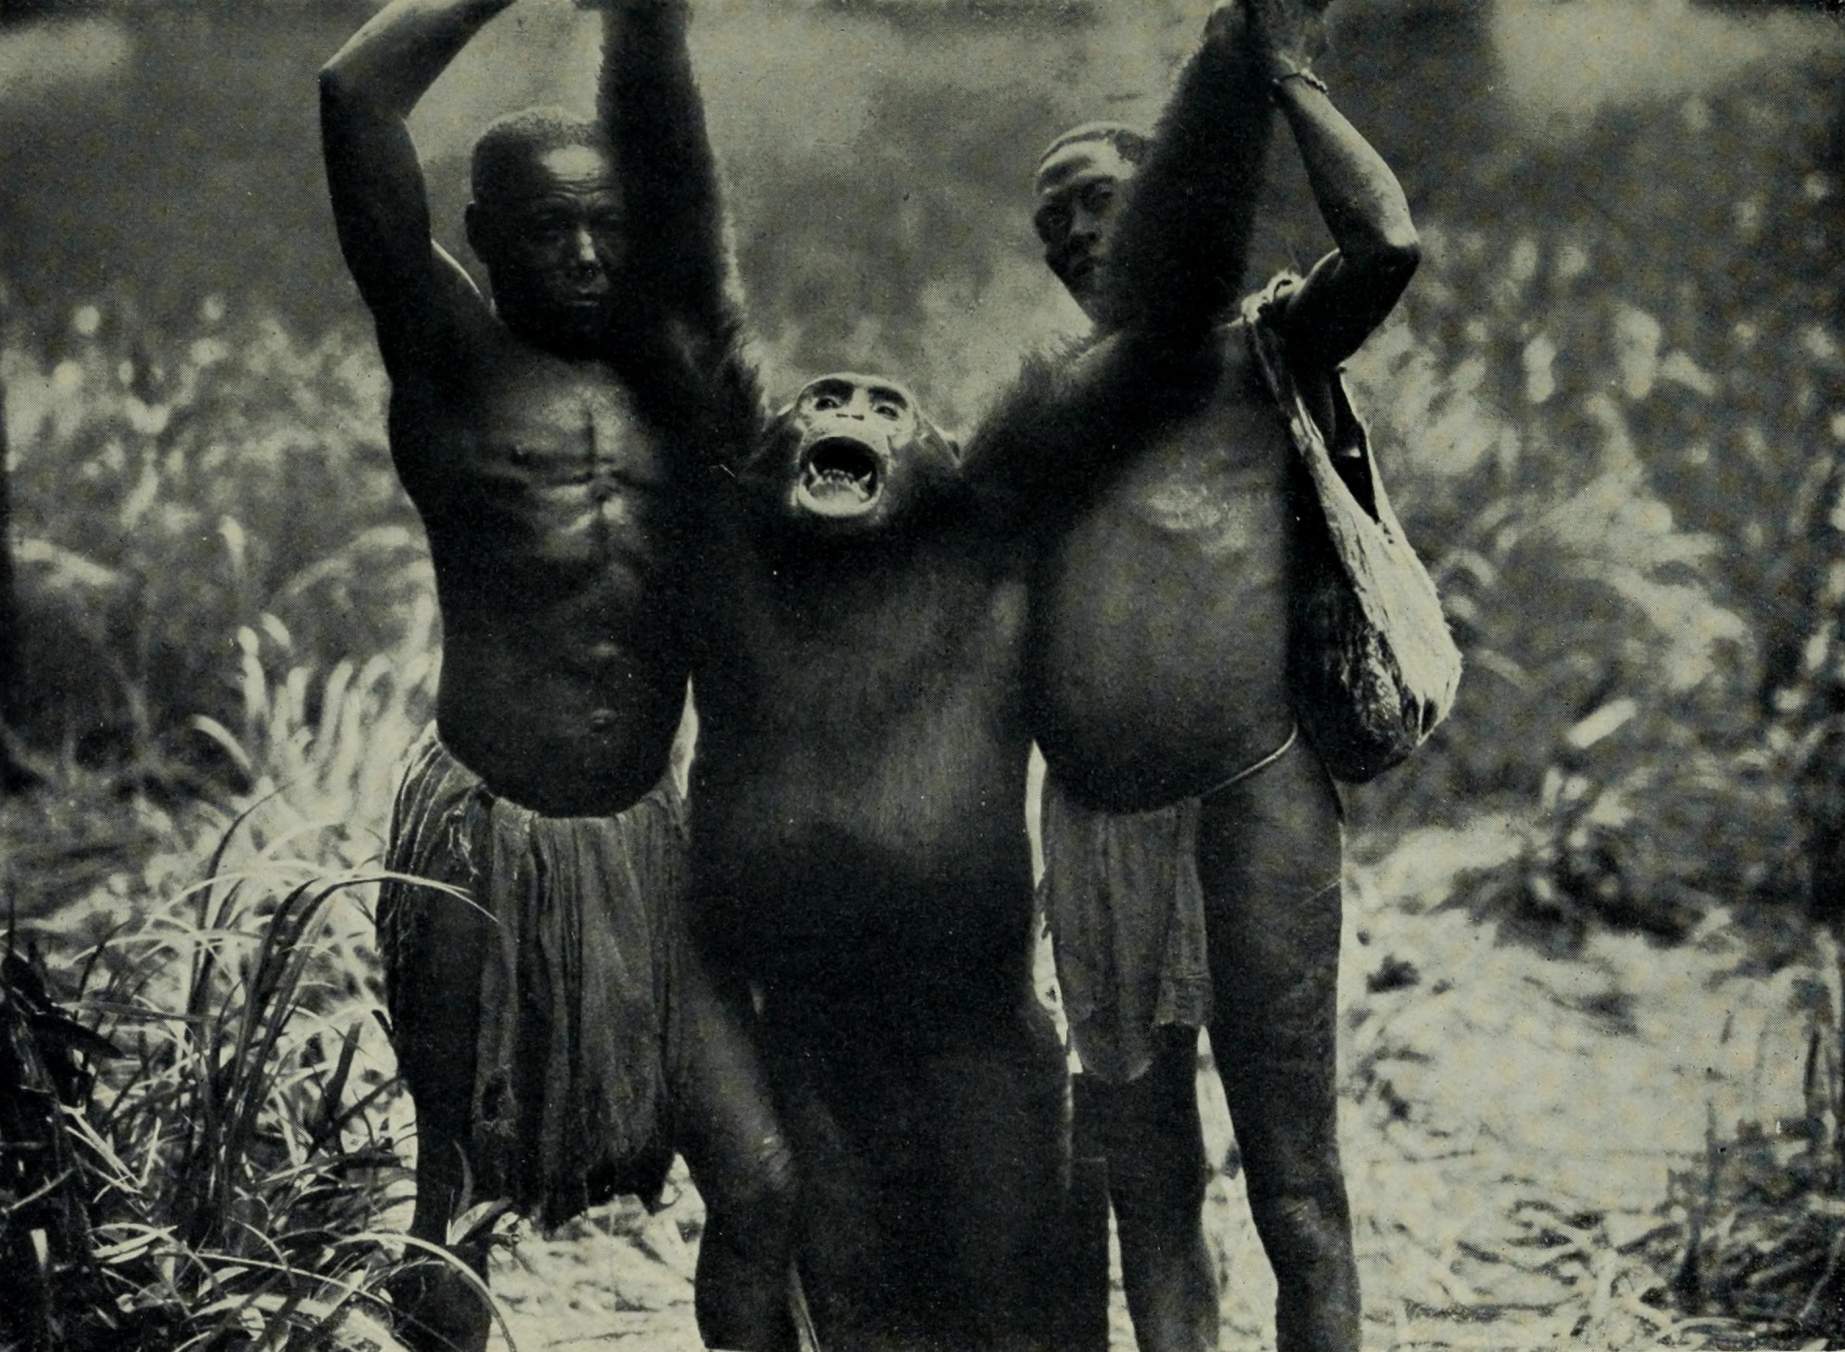 Jättiläissimpanssi, jonka saksalainen tutkimusmatkailija ainvon Wiese tappoi Kongossa tutkimusmatkansa aikana (1910-1911). Wikimedia Commons